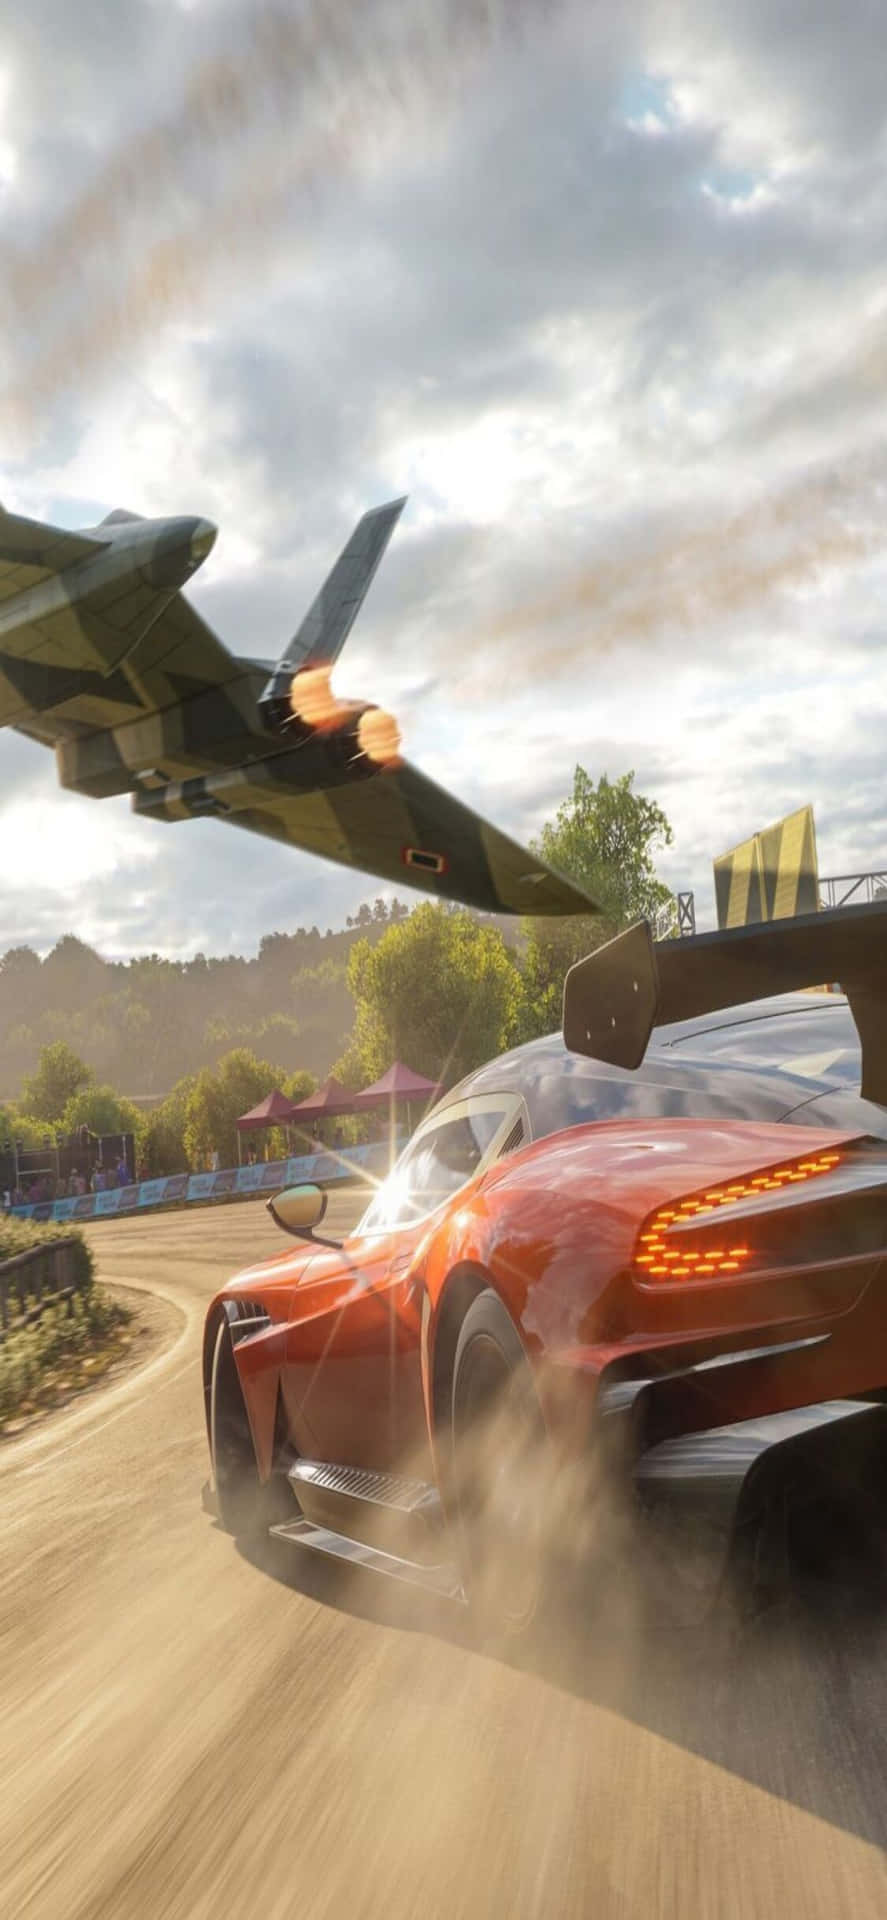 Iphonex Bakgrundsbild För Forza Motorsport 7.